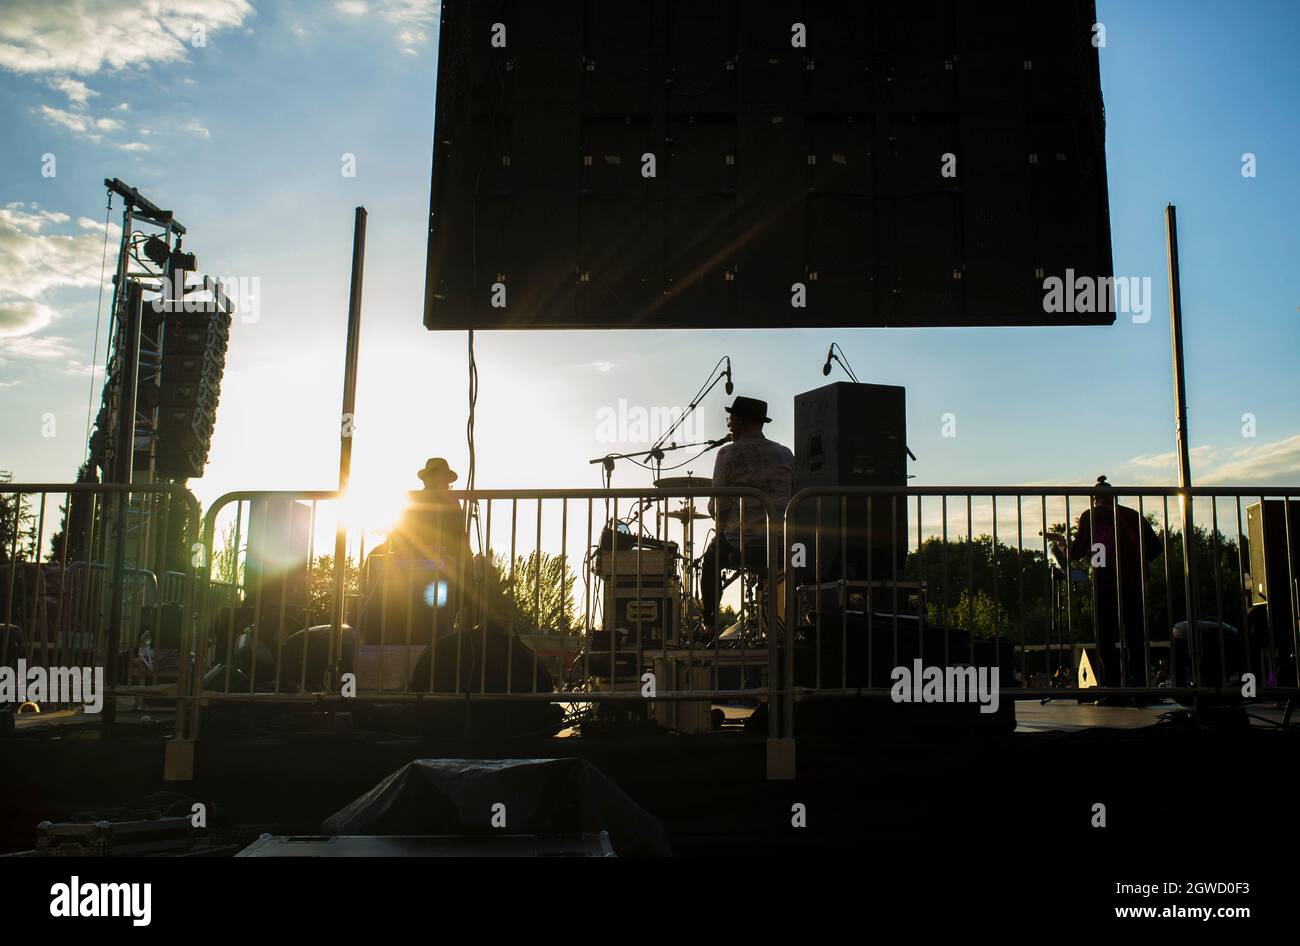 Die Performance bei Tag ist von der hinteren Bühne aus gesehen sehr rosig. Sonnenuntergang blauer Himmel Hintergrund Stockfoto